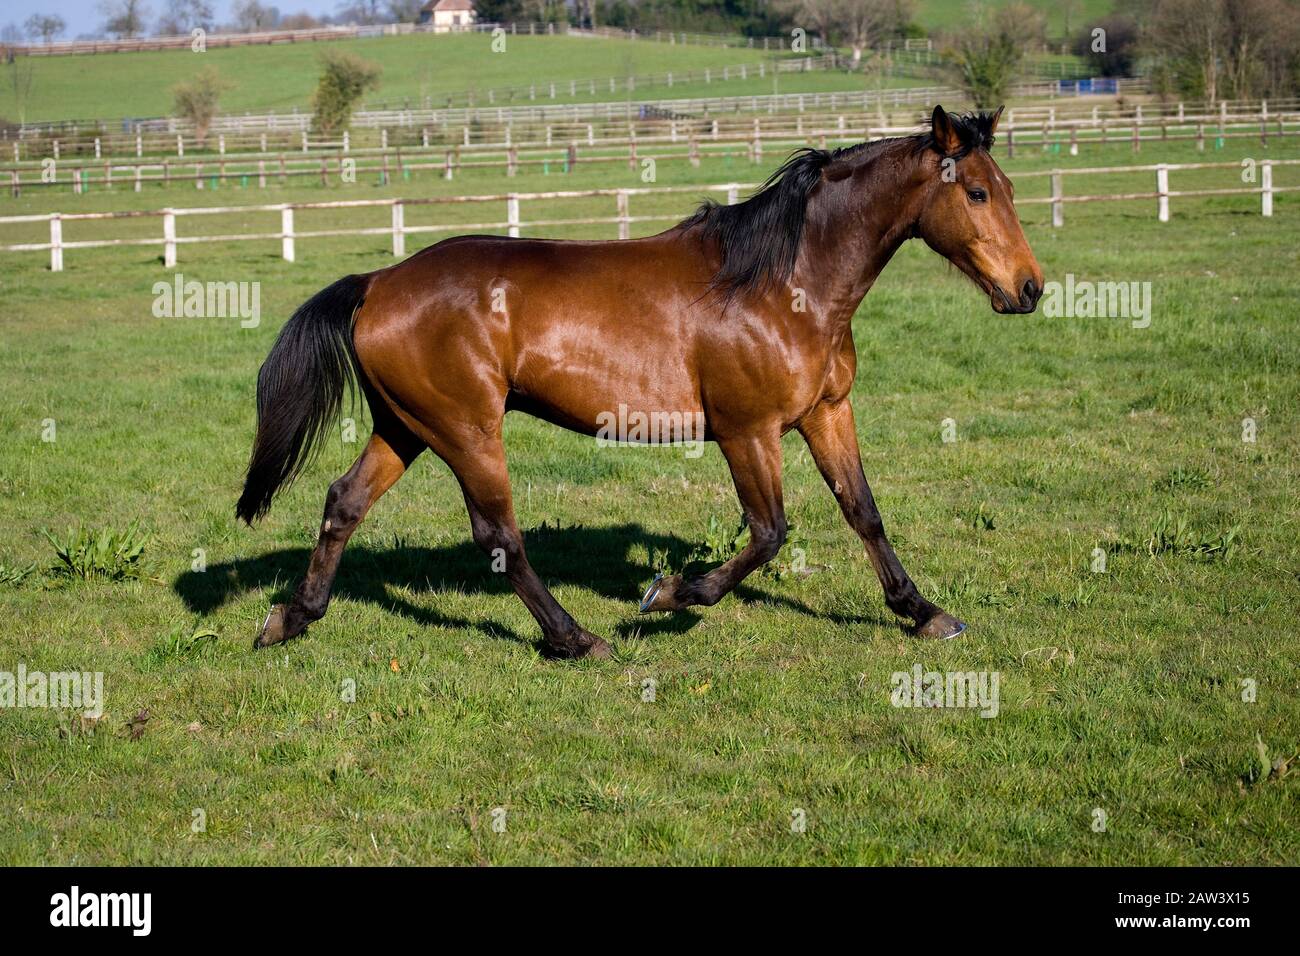 Cavallo Trotter Francese Immagini E Fotos Stock Alamy